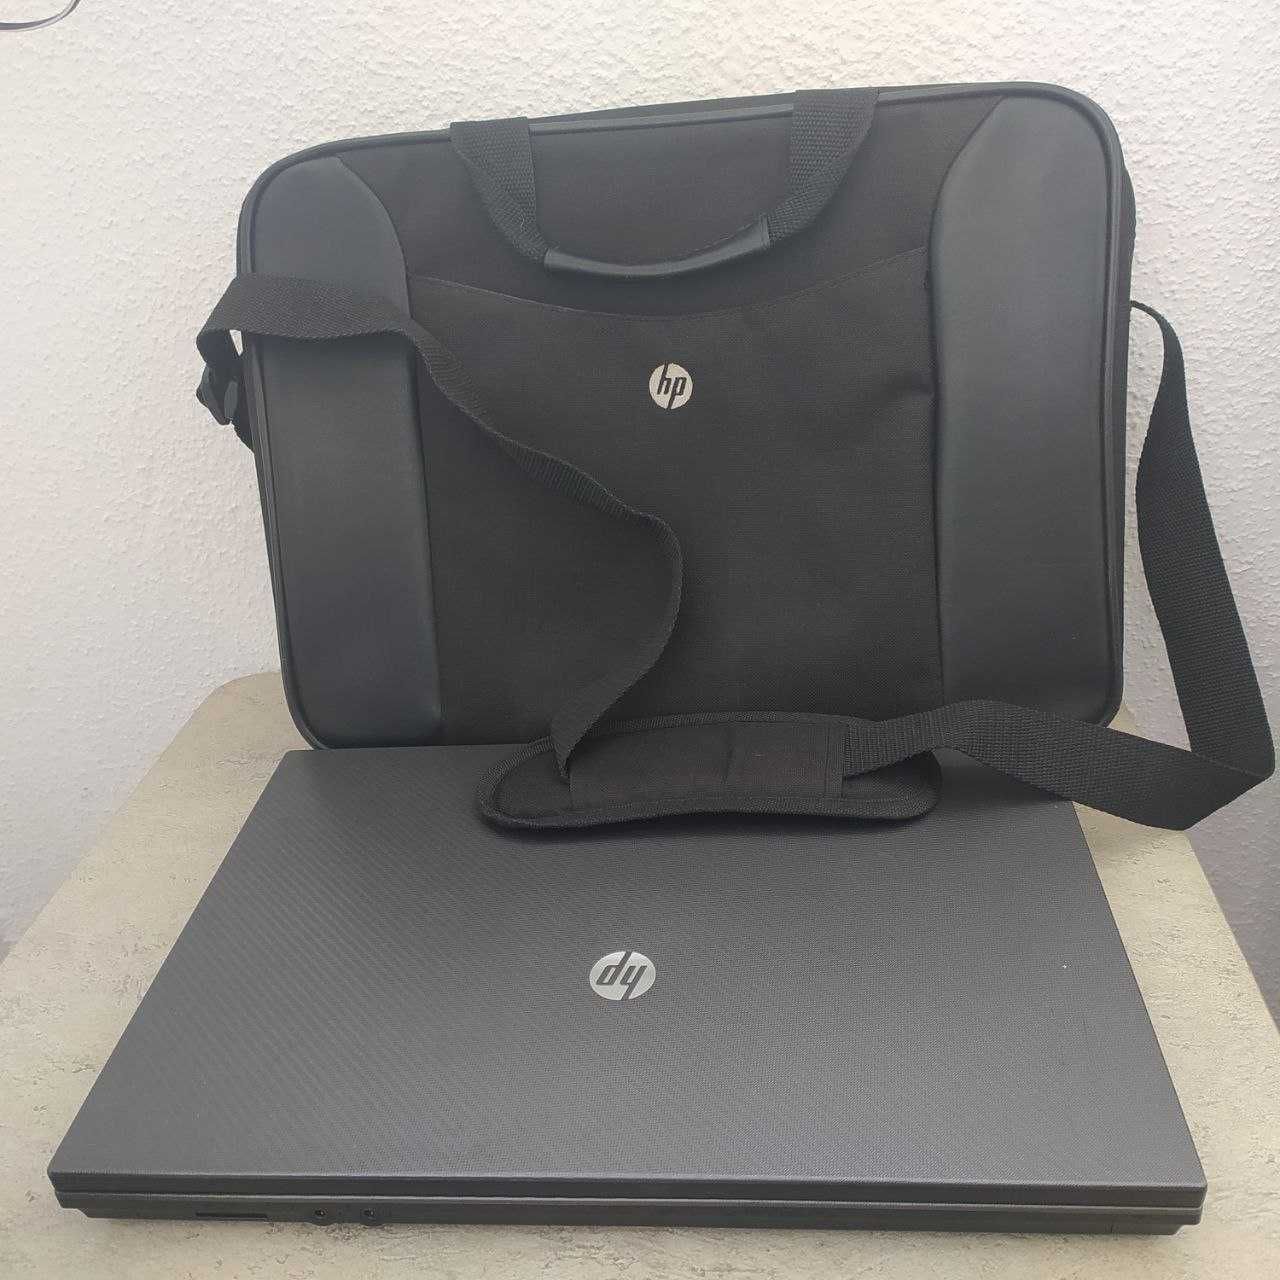 Продам Ноутбук HP Delphi D40 із фірмовою сумкою в подарунок.